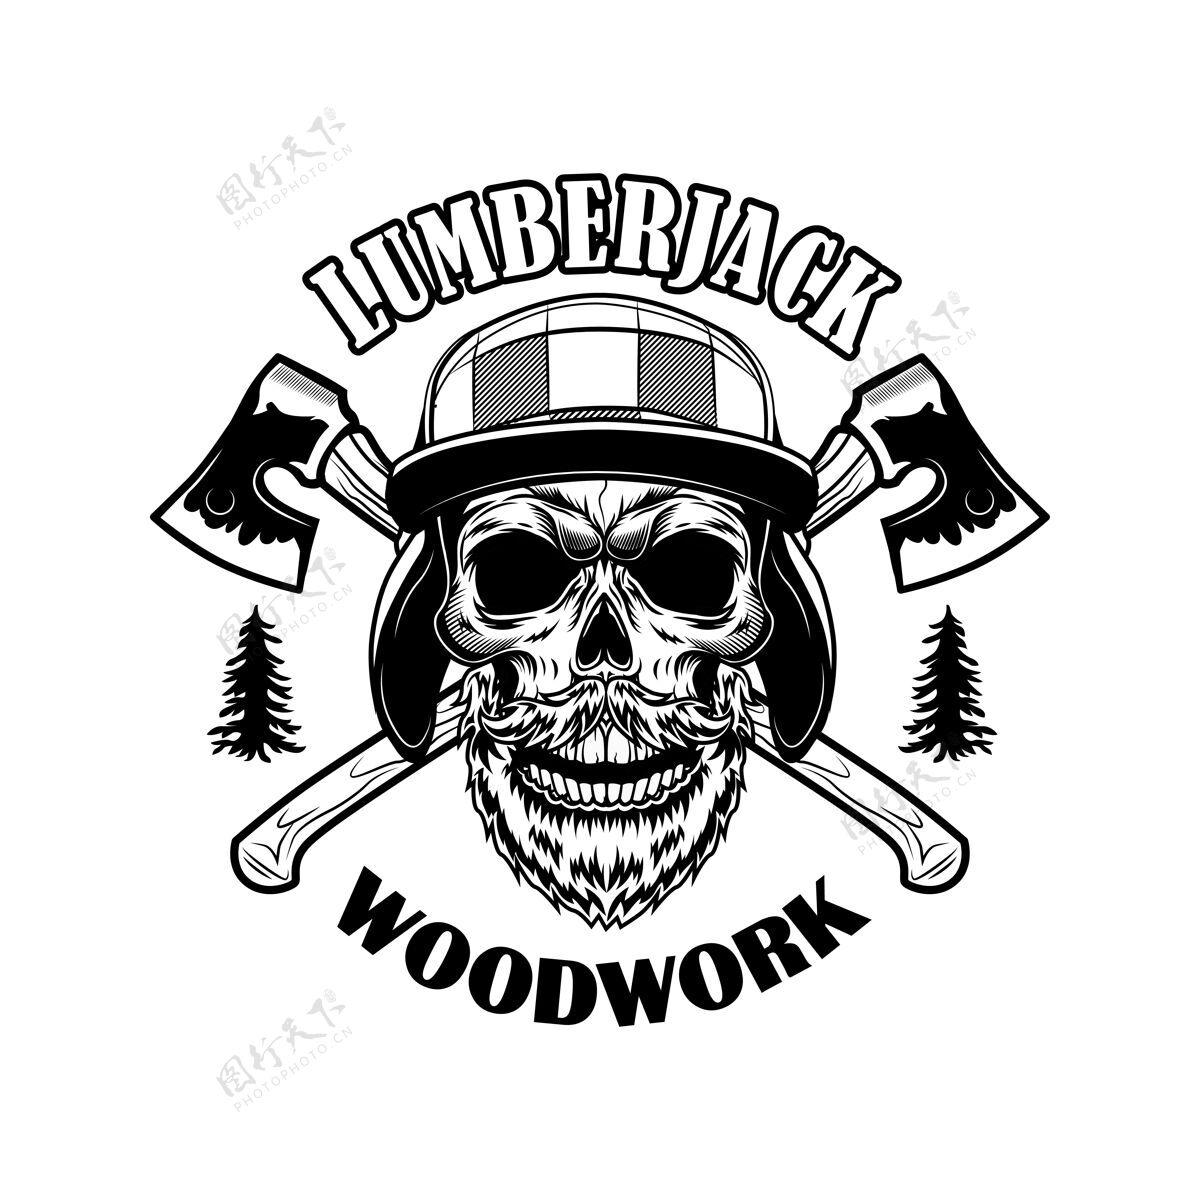 木头有胡须的伐木工人头骨矢量图十字轴和木制品文字的骷髅头标志或纹身模板的伐木工人或樵夫概念工作时髦工作